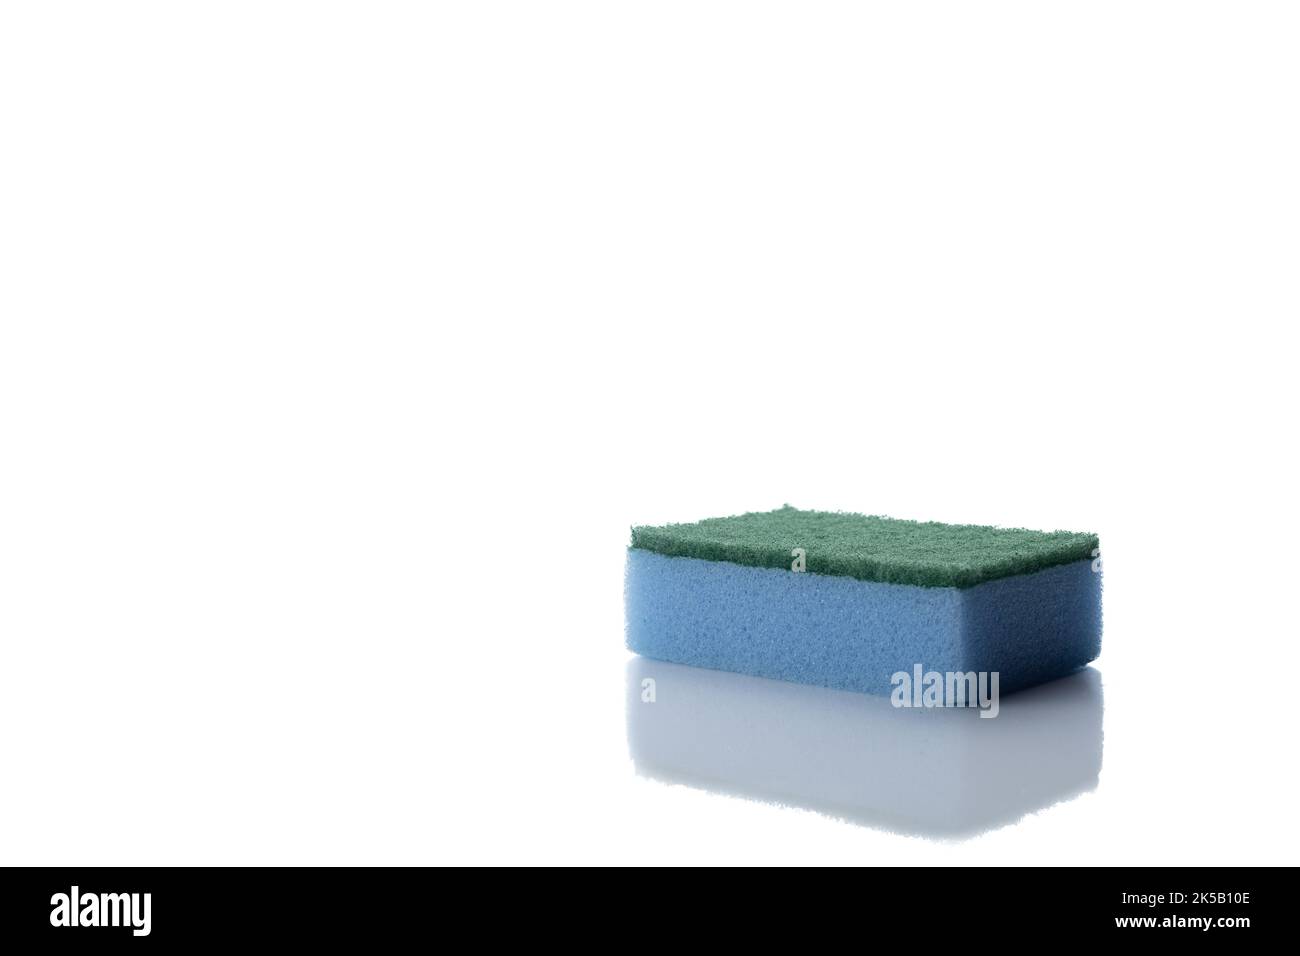 https://c8.alamy.com/compes/2k5b10e/una-esponja-azul-para-lavar-platos-aislada-en-el-fondo-blanco-2k5b10e.jpg